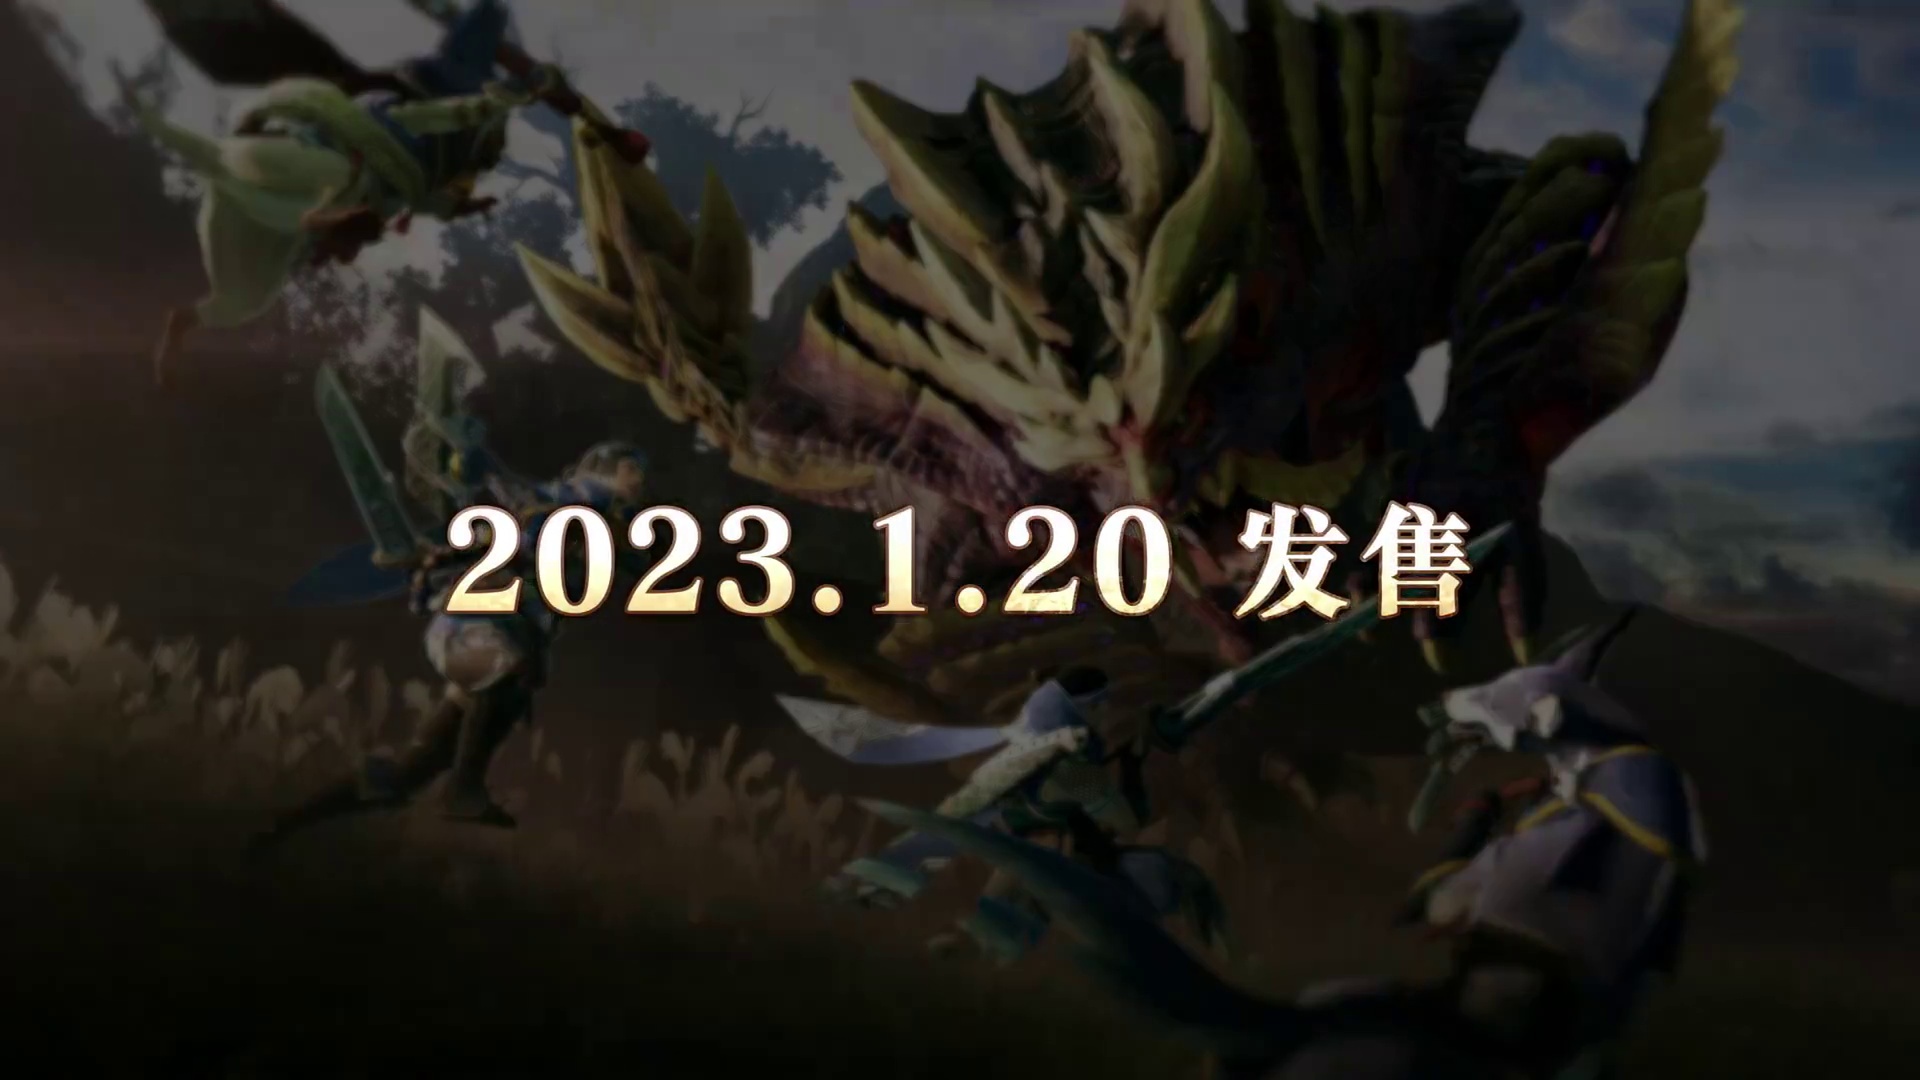 《怪物猎人 崛起》将于2023年1月20日登陆Xbox Series X|S/XboxOne/Windows/PS5/PS4平台